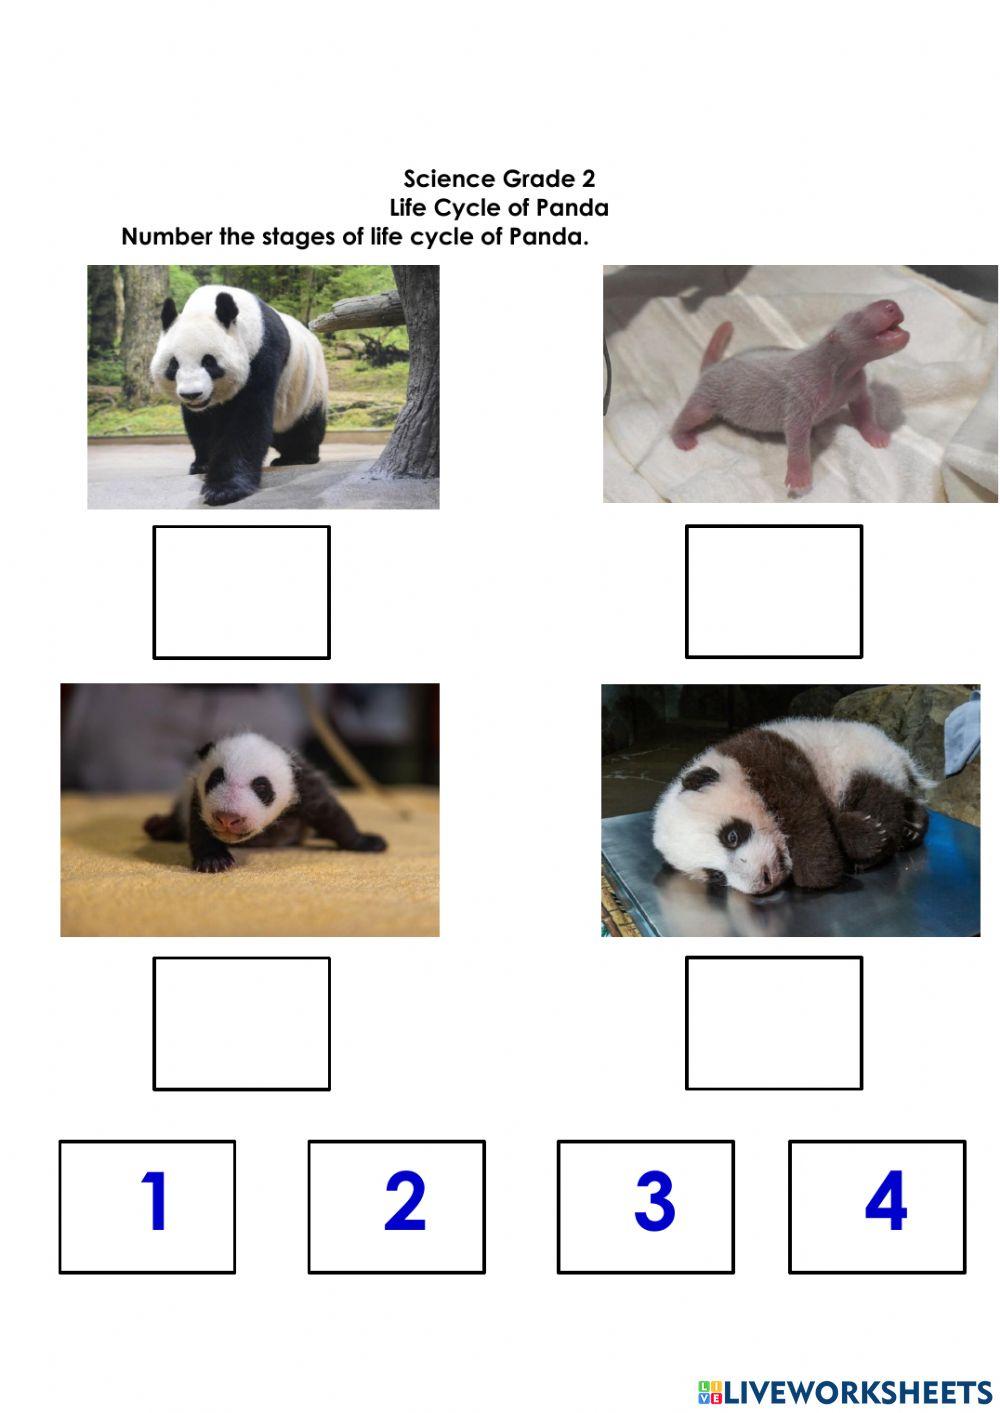 Life cycle of panda activity